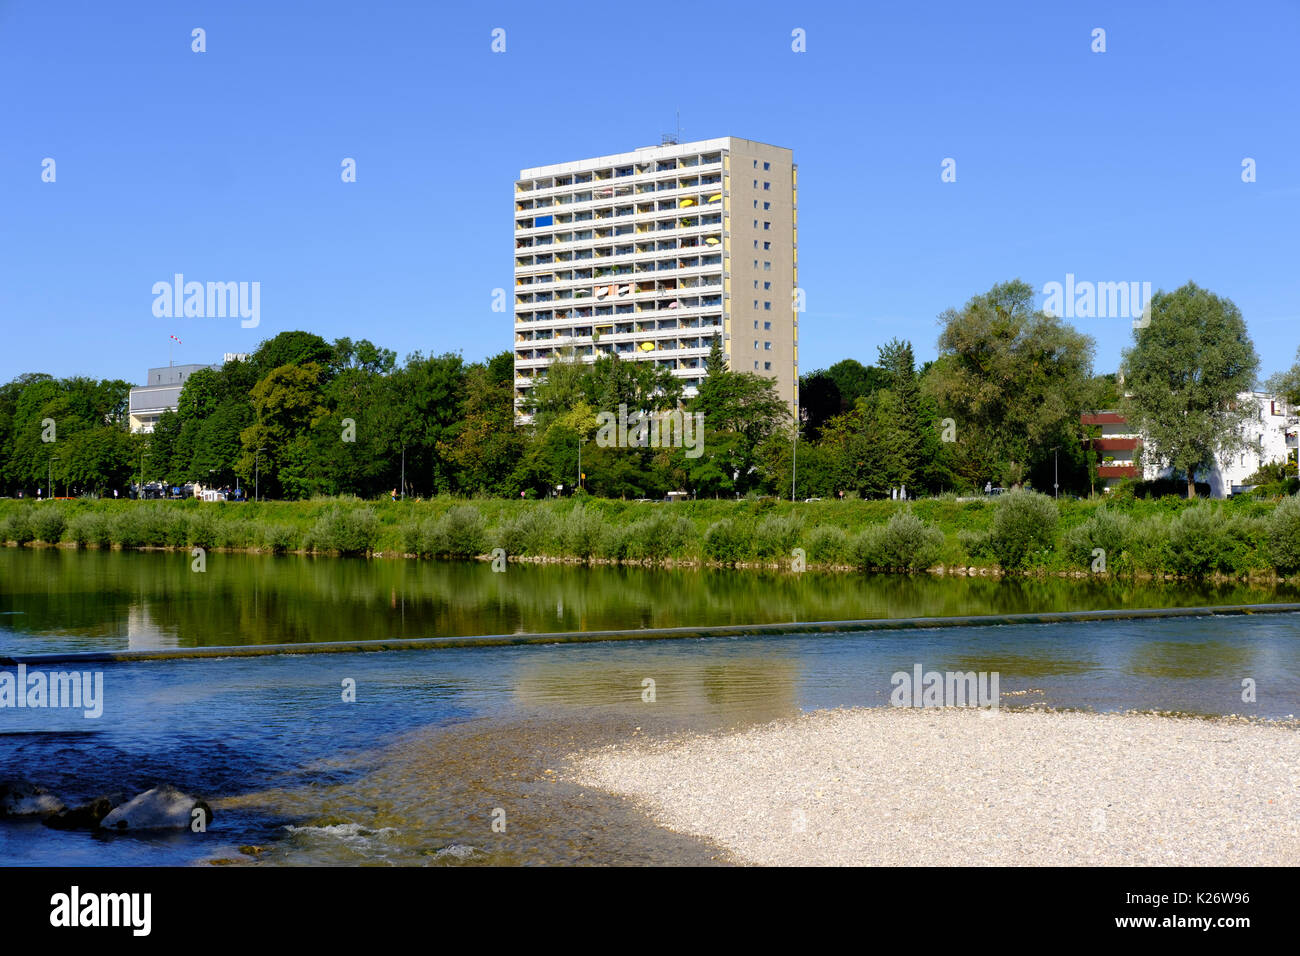 Sur l'Isar Flaucher, gratte-ciel de Thalkirchen, Munich, Haute-Bavière, Bavière, Allemagne Banque D'Images